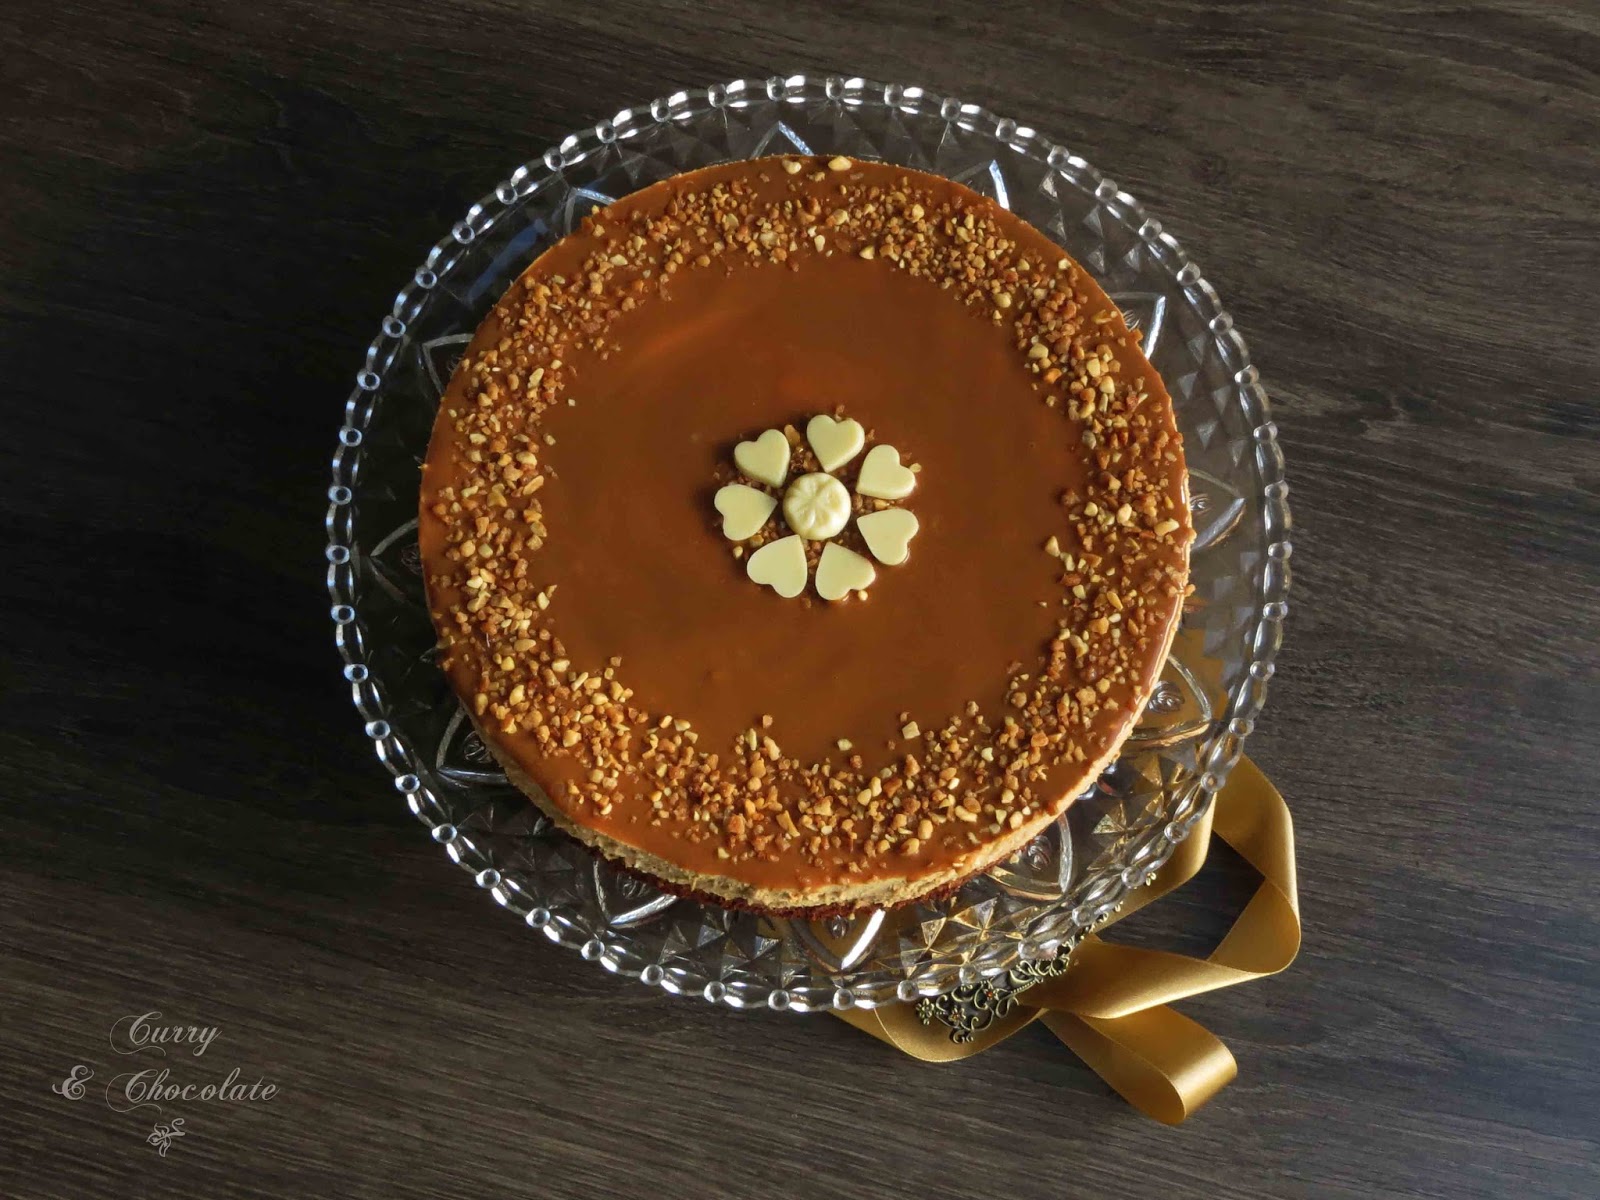 Tarta mousse de dulce de leche con base de bizcocho – Dulce de leche mousse cake with brownie crust